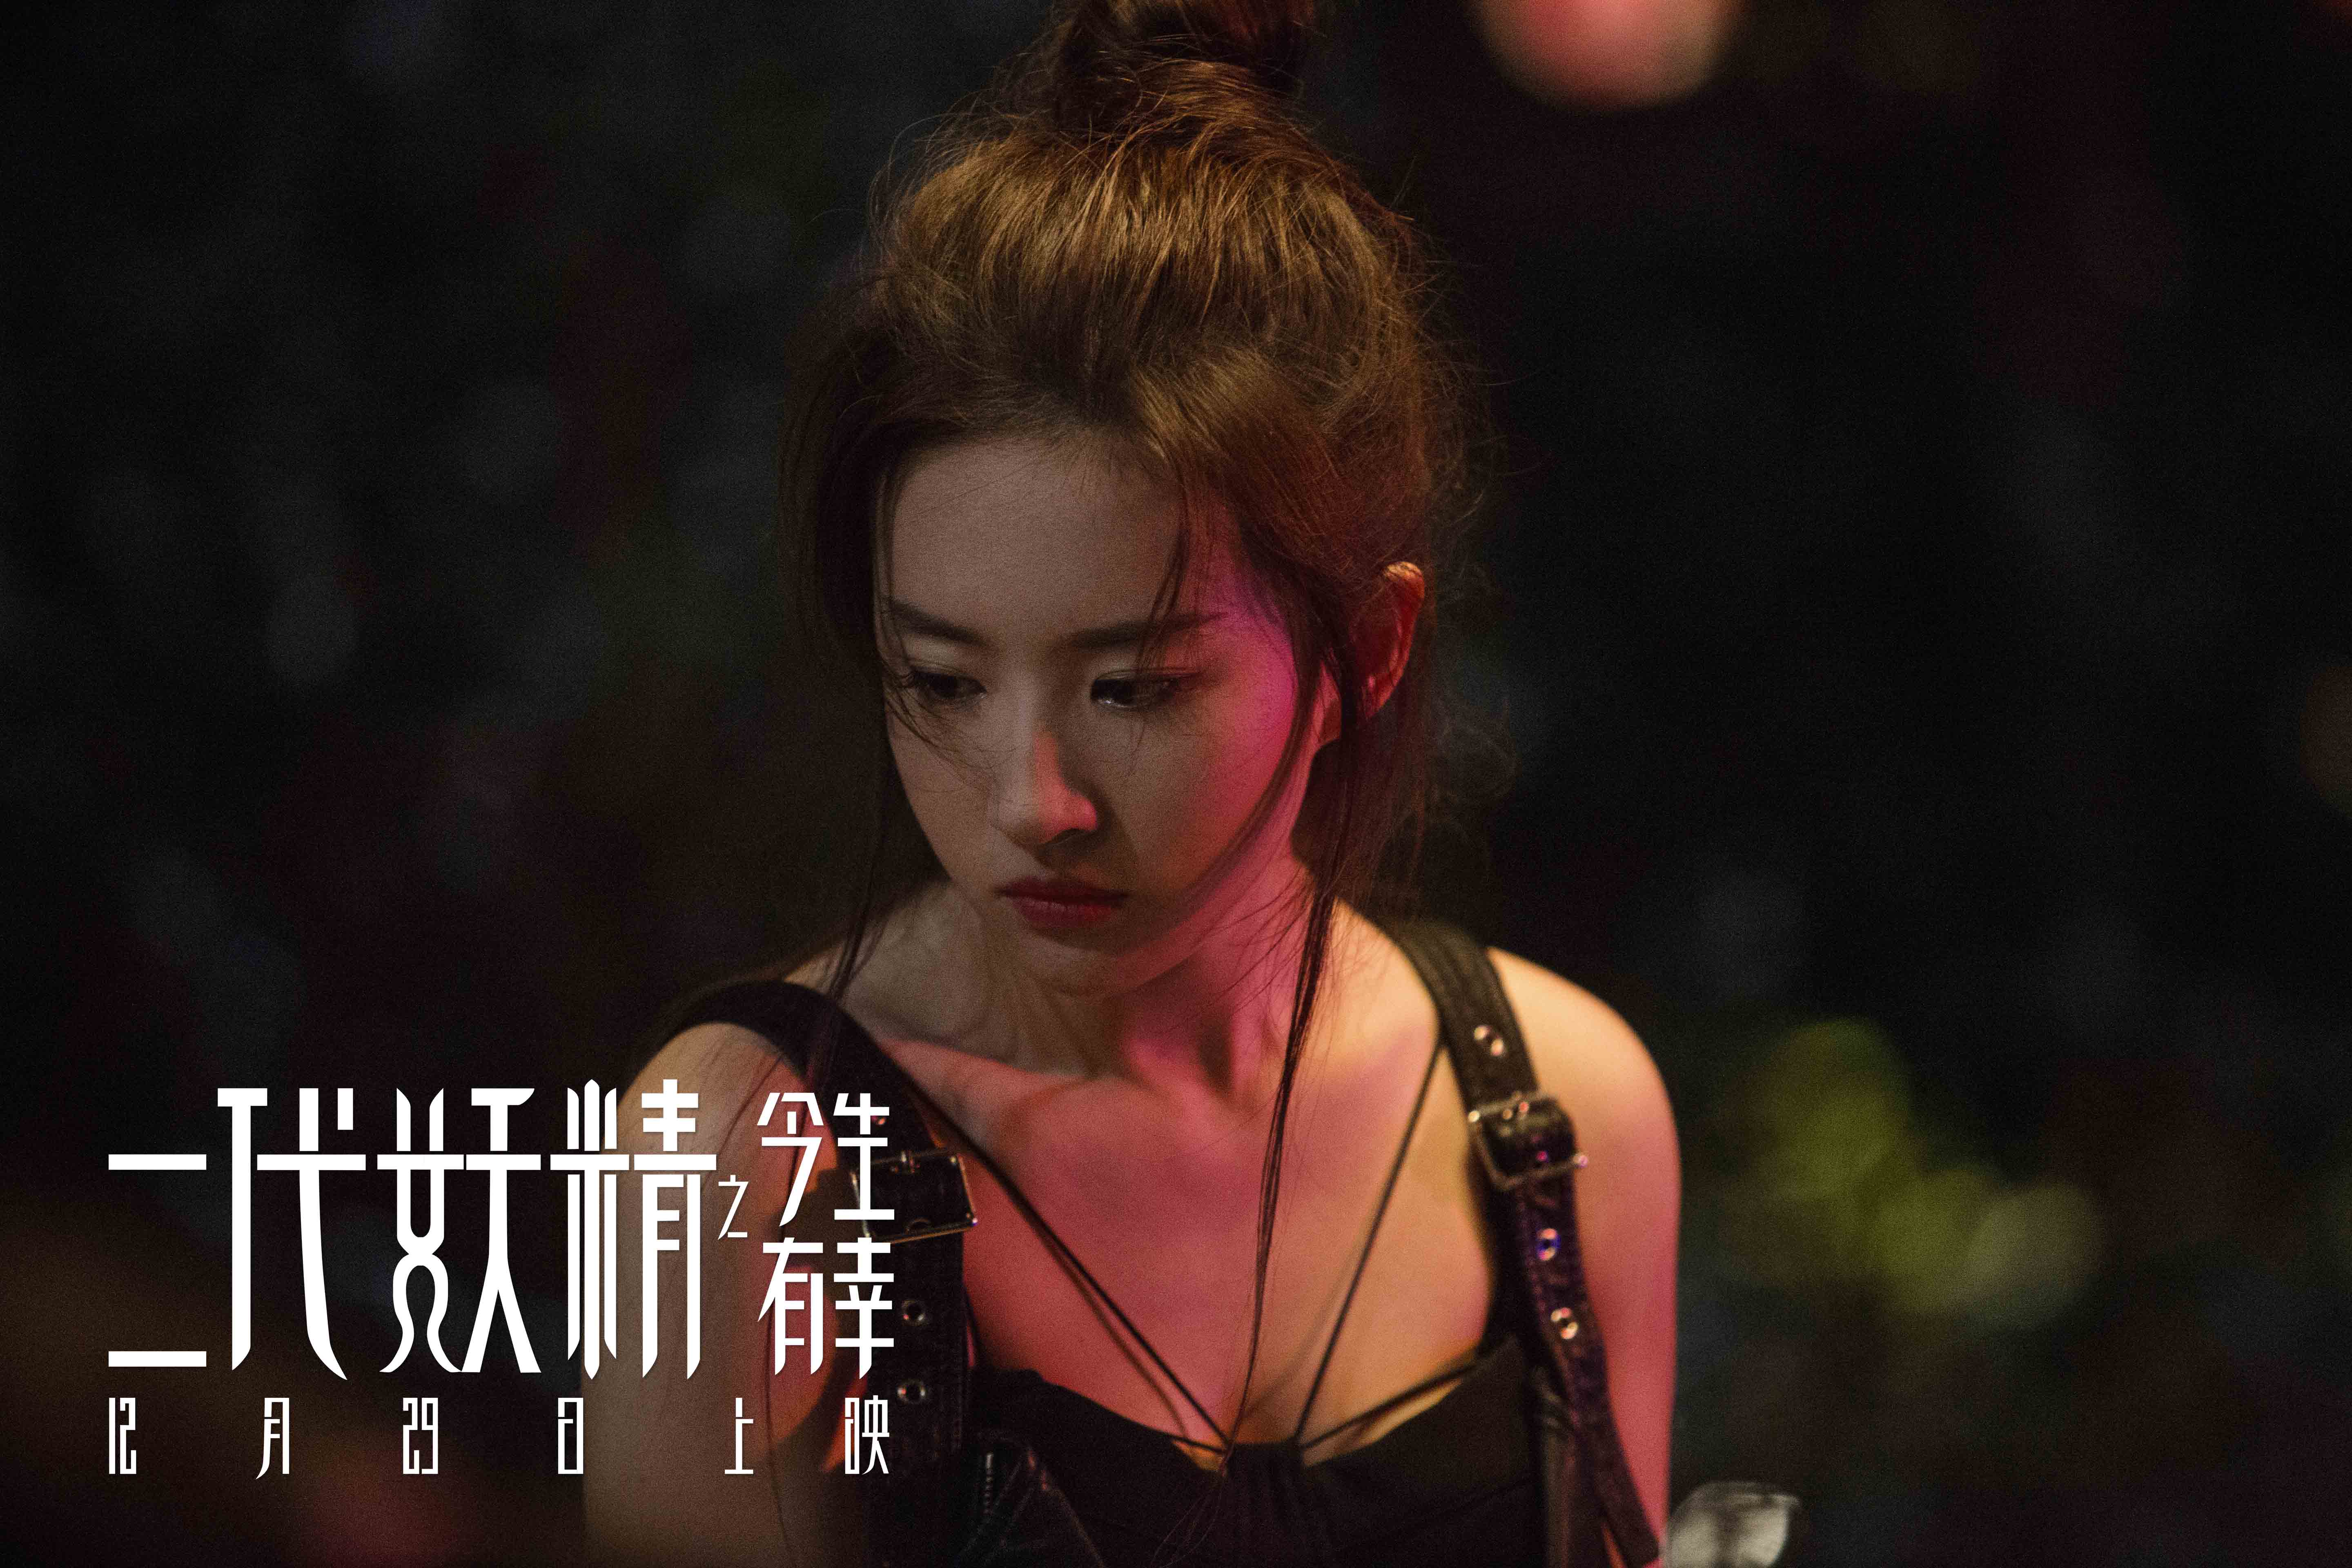 刘亦菲的《二代妖精》上映获得好评,网友评:不仅不烂俗还挺好看